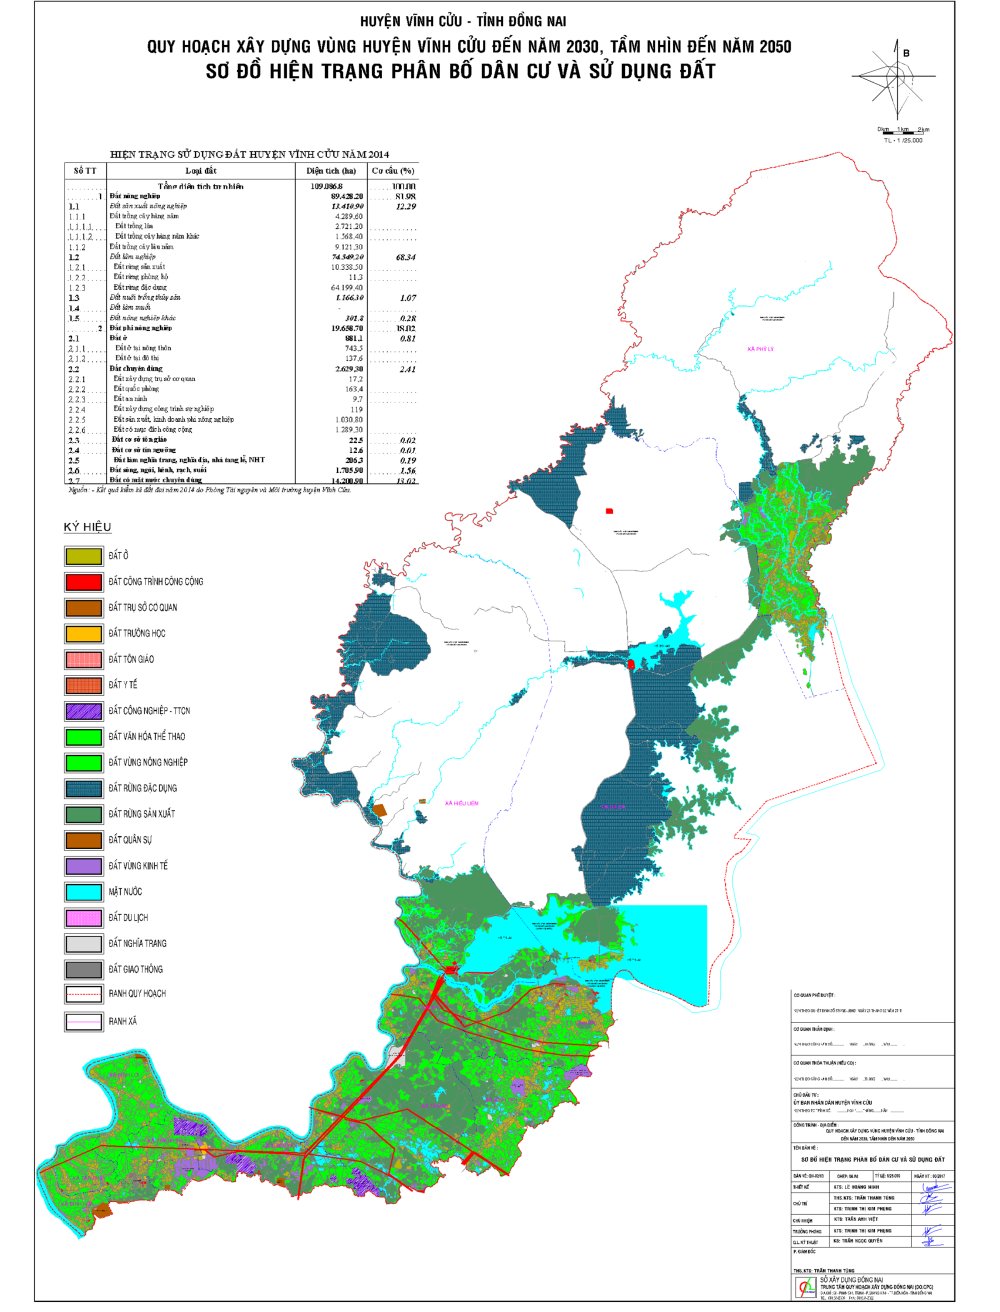 Bản đồ hiện trang sử dụng đất huyện Vĩnh Cửu